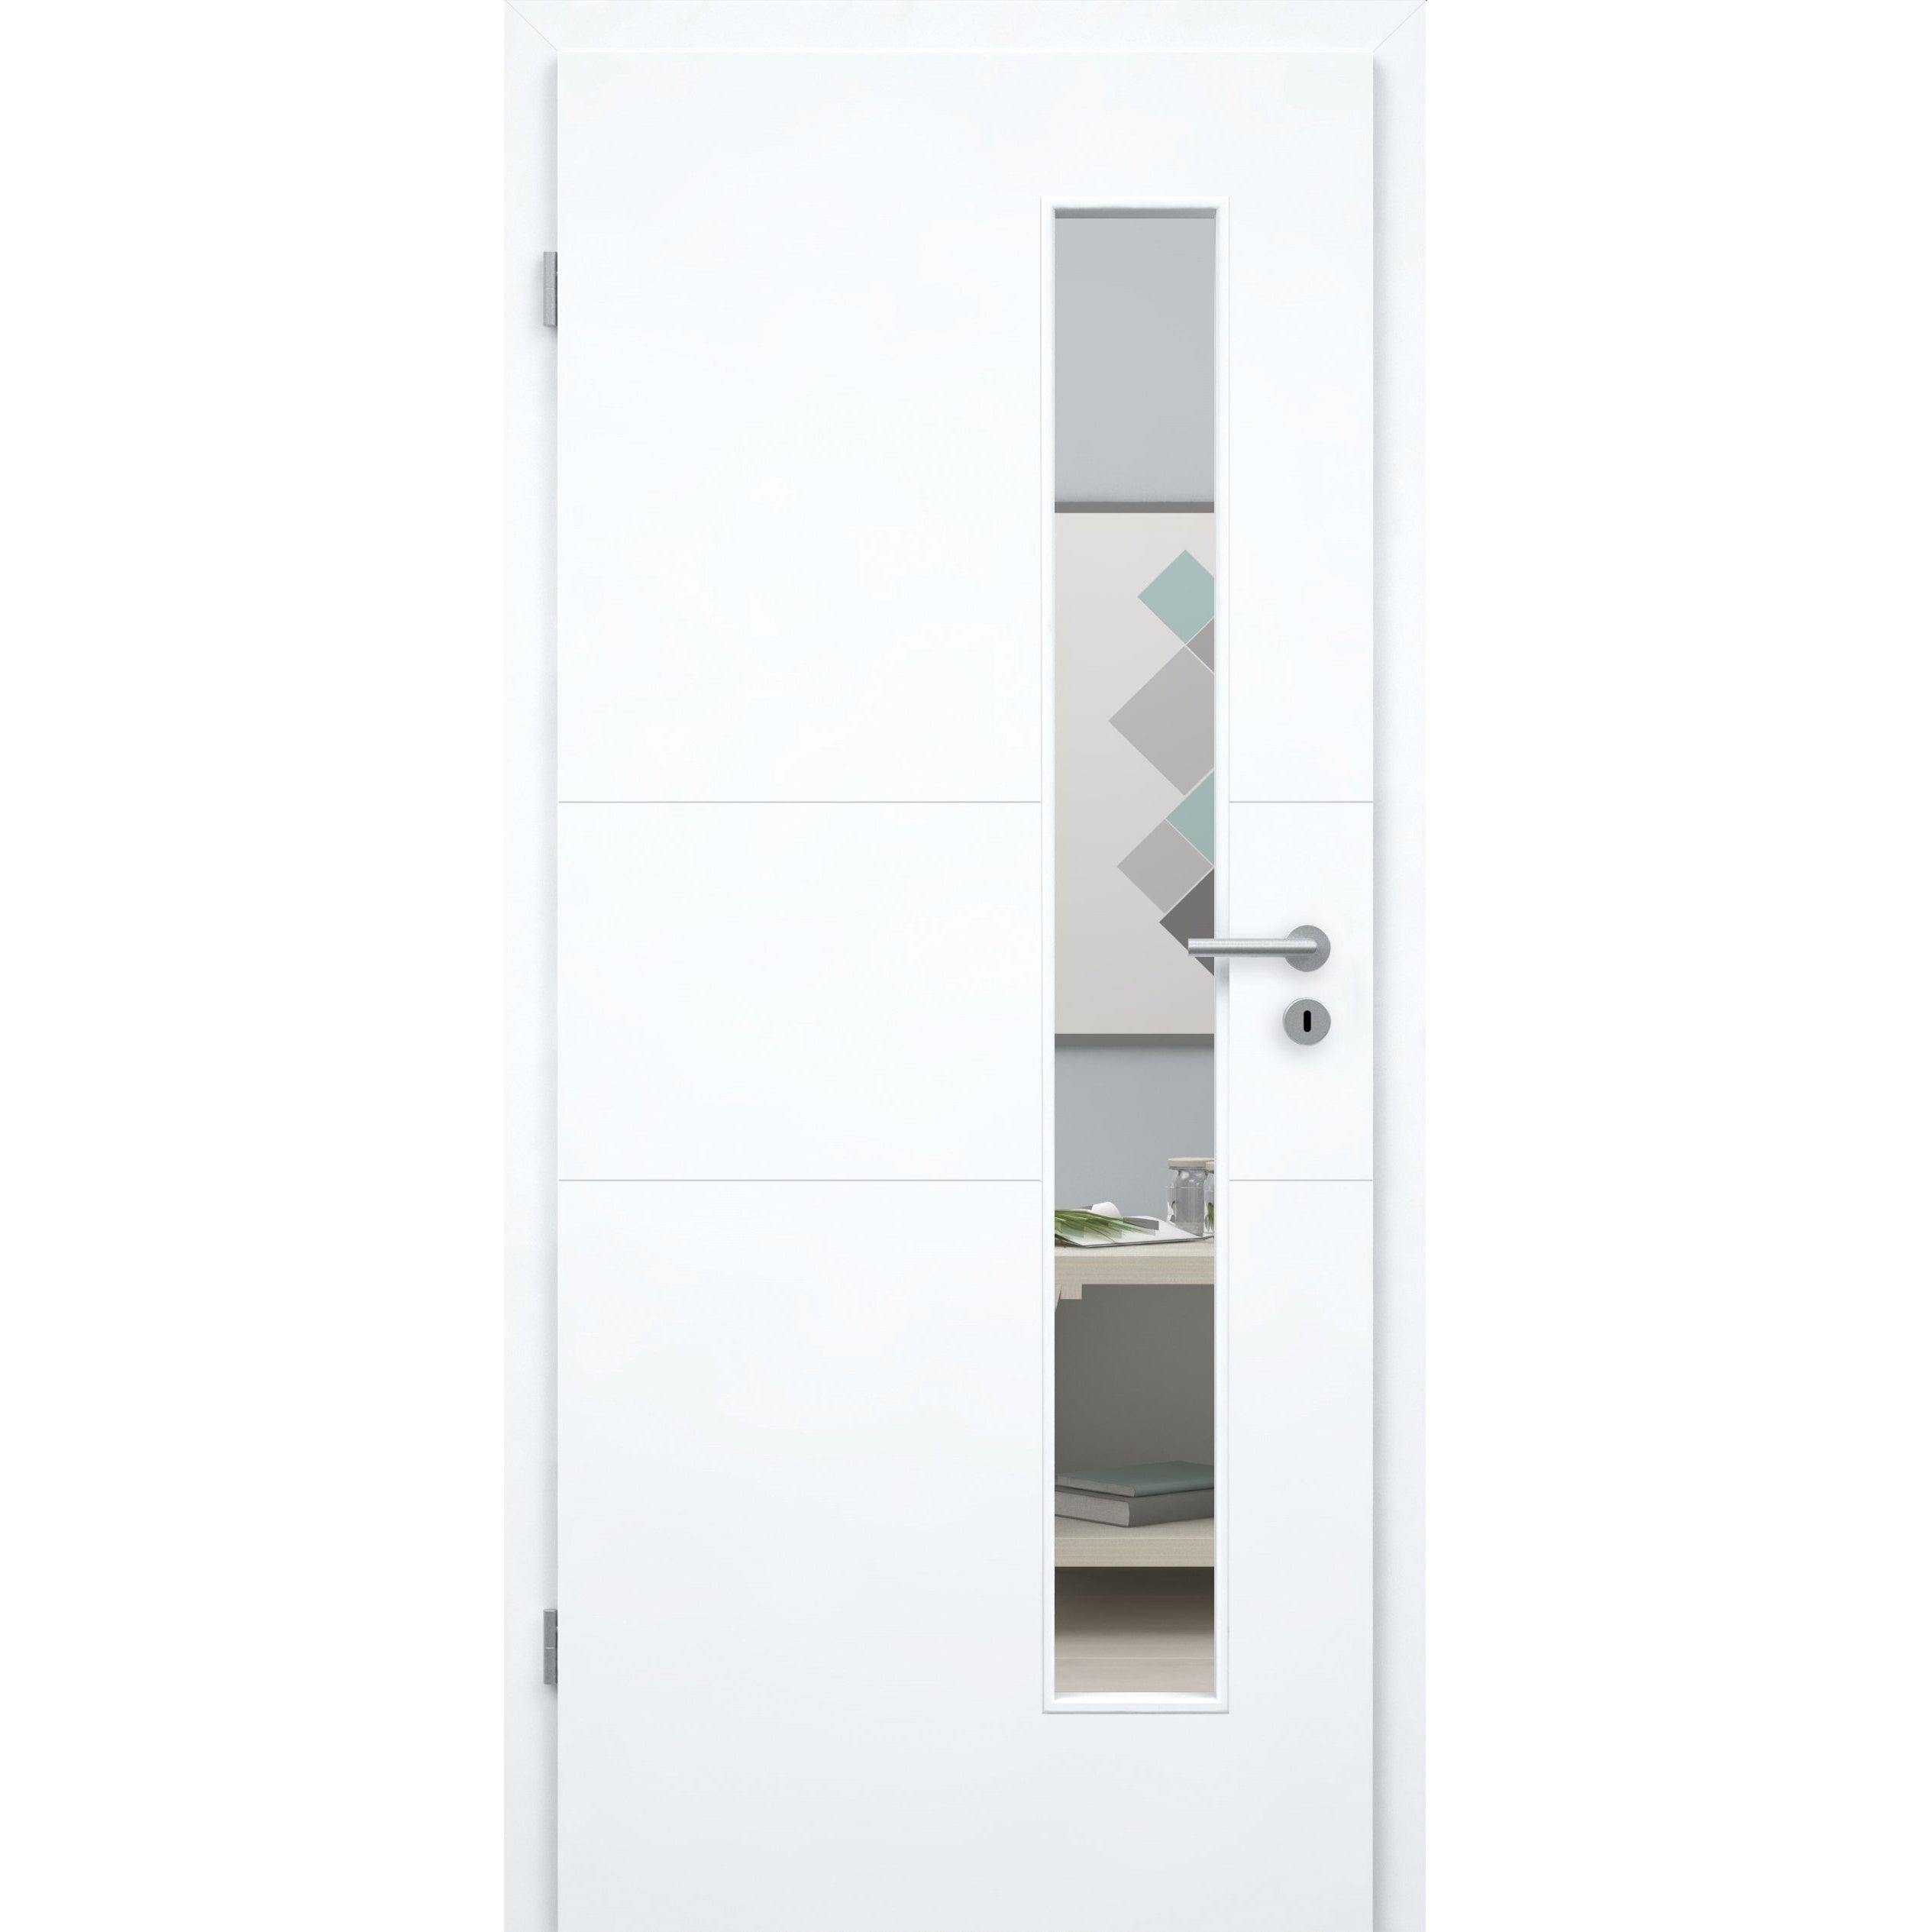 Zimmertür mit Lichtausschnitt brillant-weiß 2 Rillen quer Designkante - Modell Designtür Q23LAS